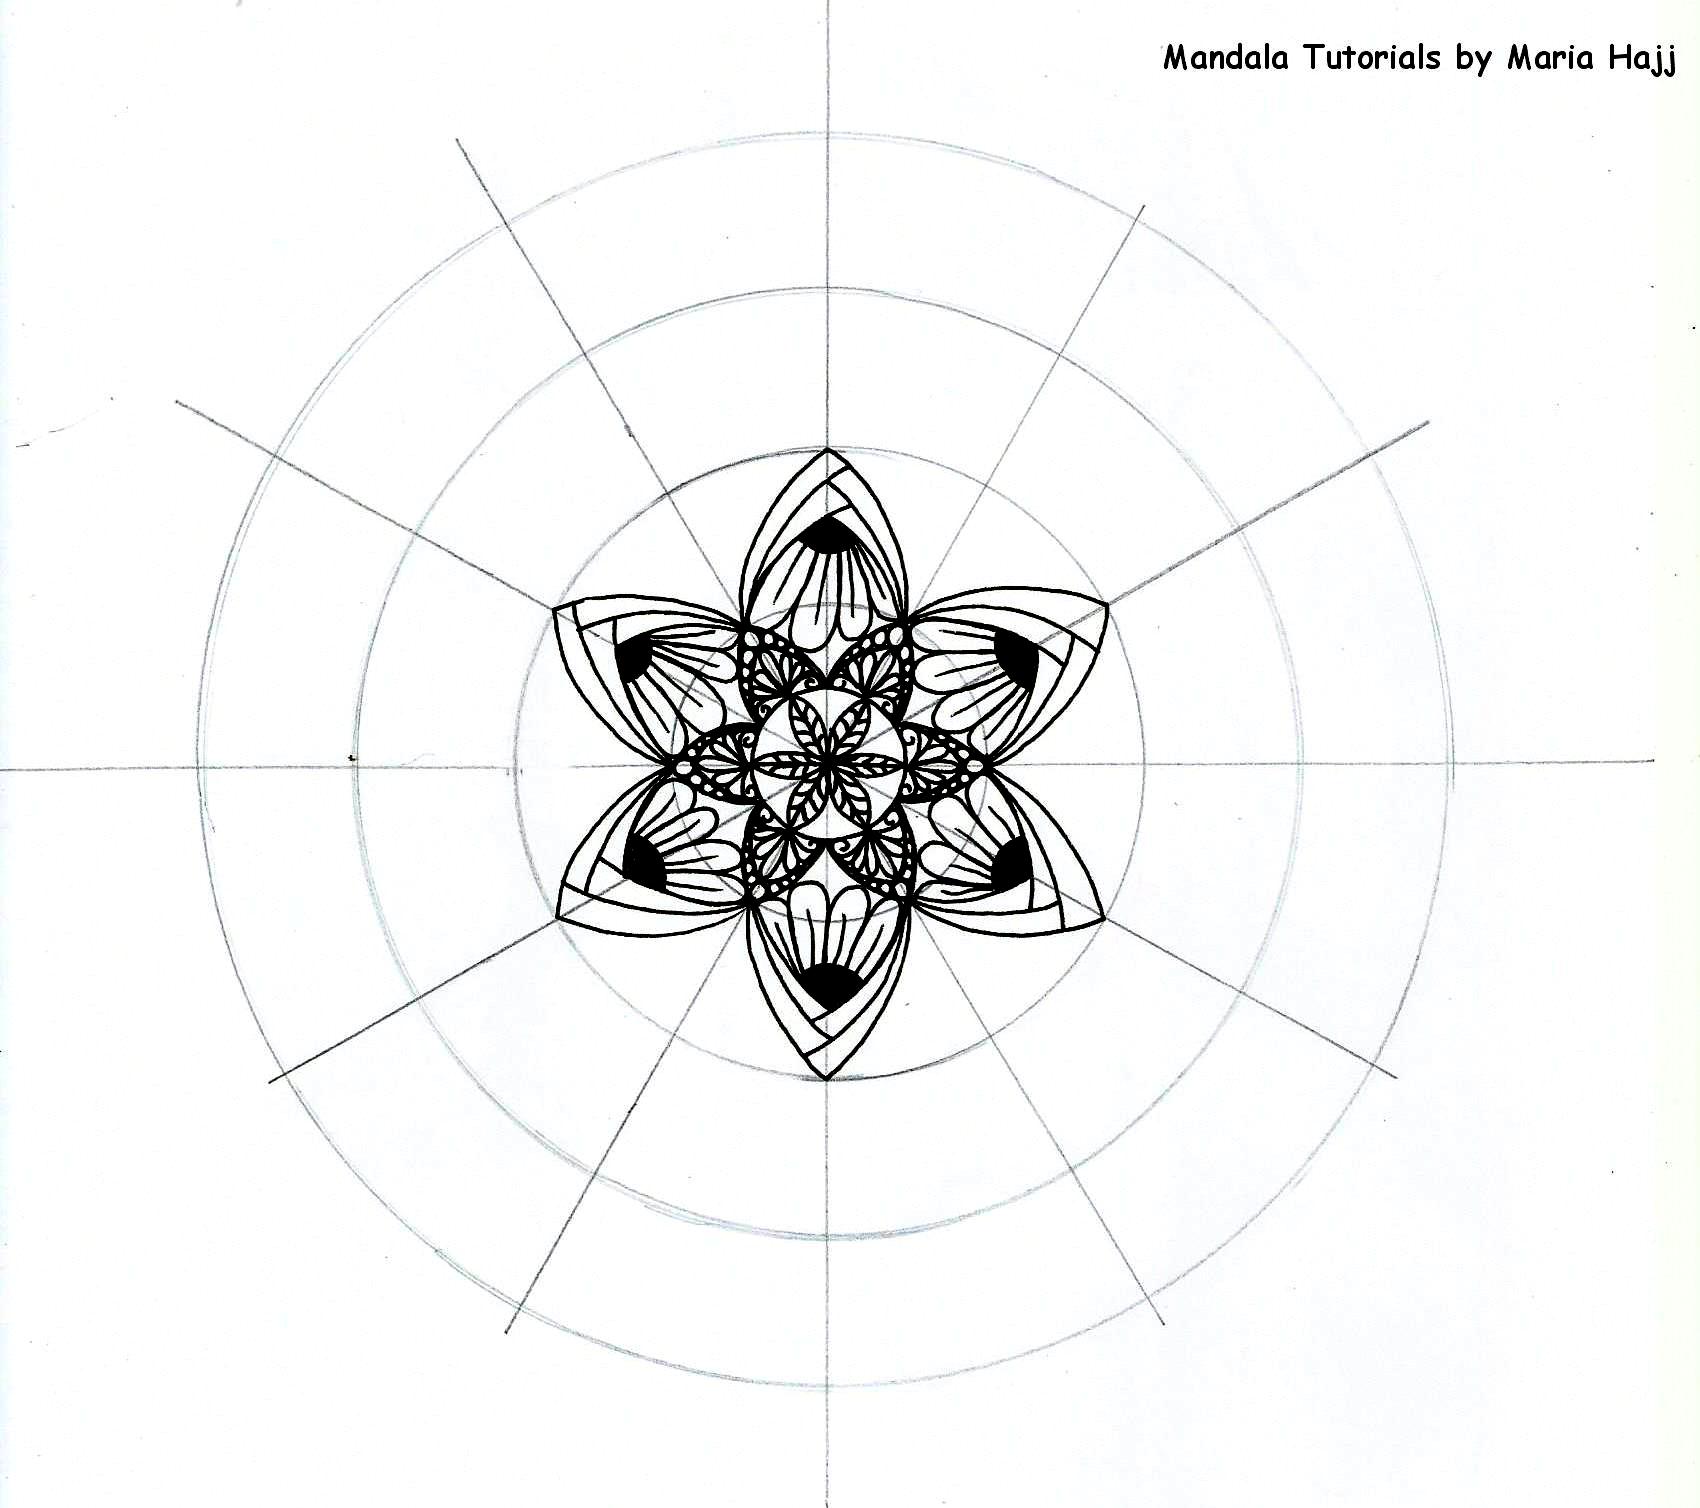 Mandala Tutorial n. 3 | How to draw a mandala using the mandala ...